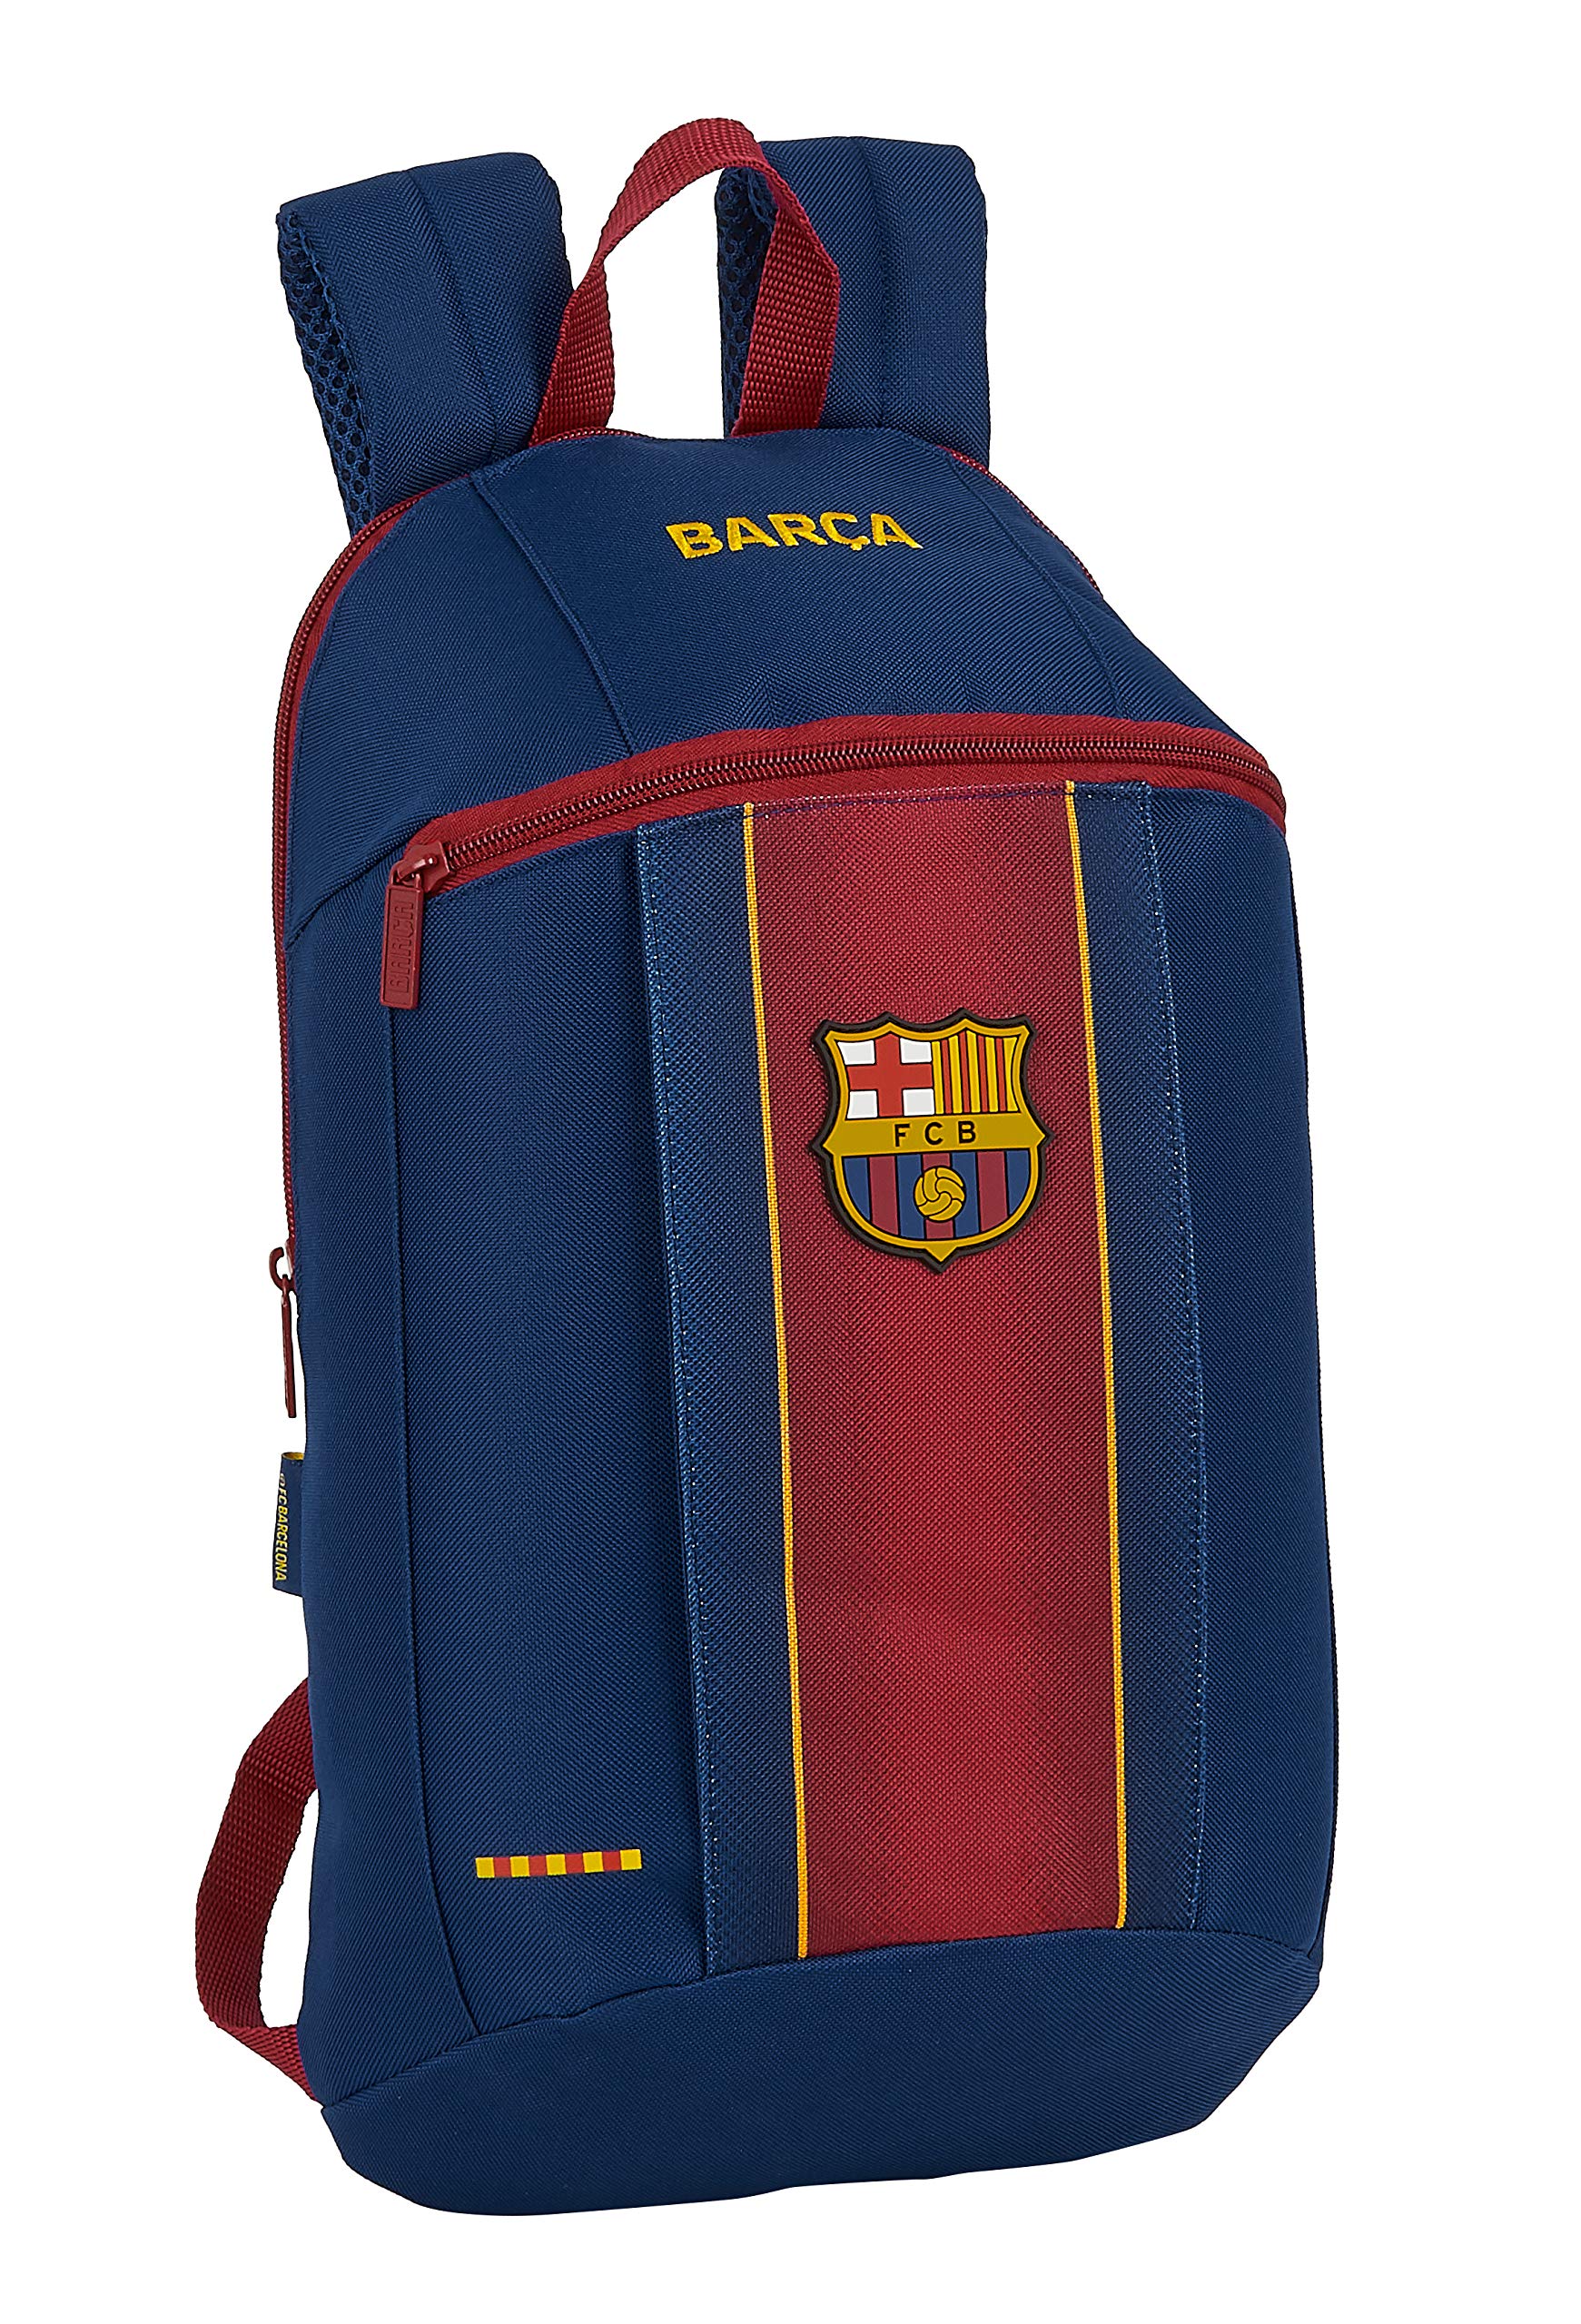 Safta FC Barcelona Mini-Rucksack für den täglichen Gebrauch 20/21, 220 x 100 x 390 mm, Marineblau/Granatrot, M